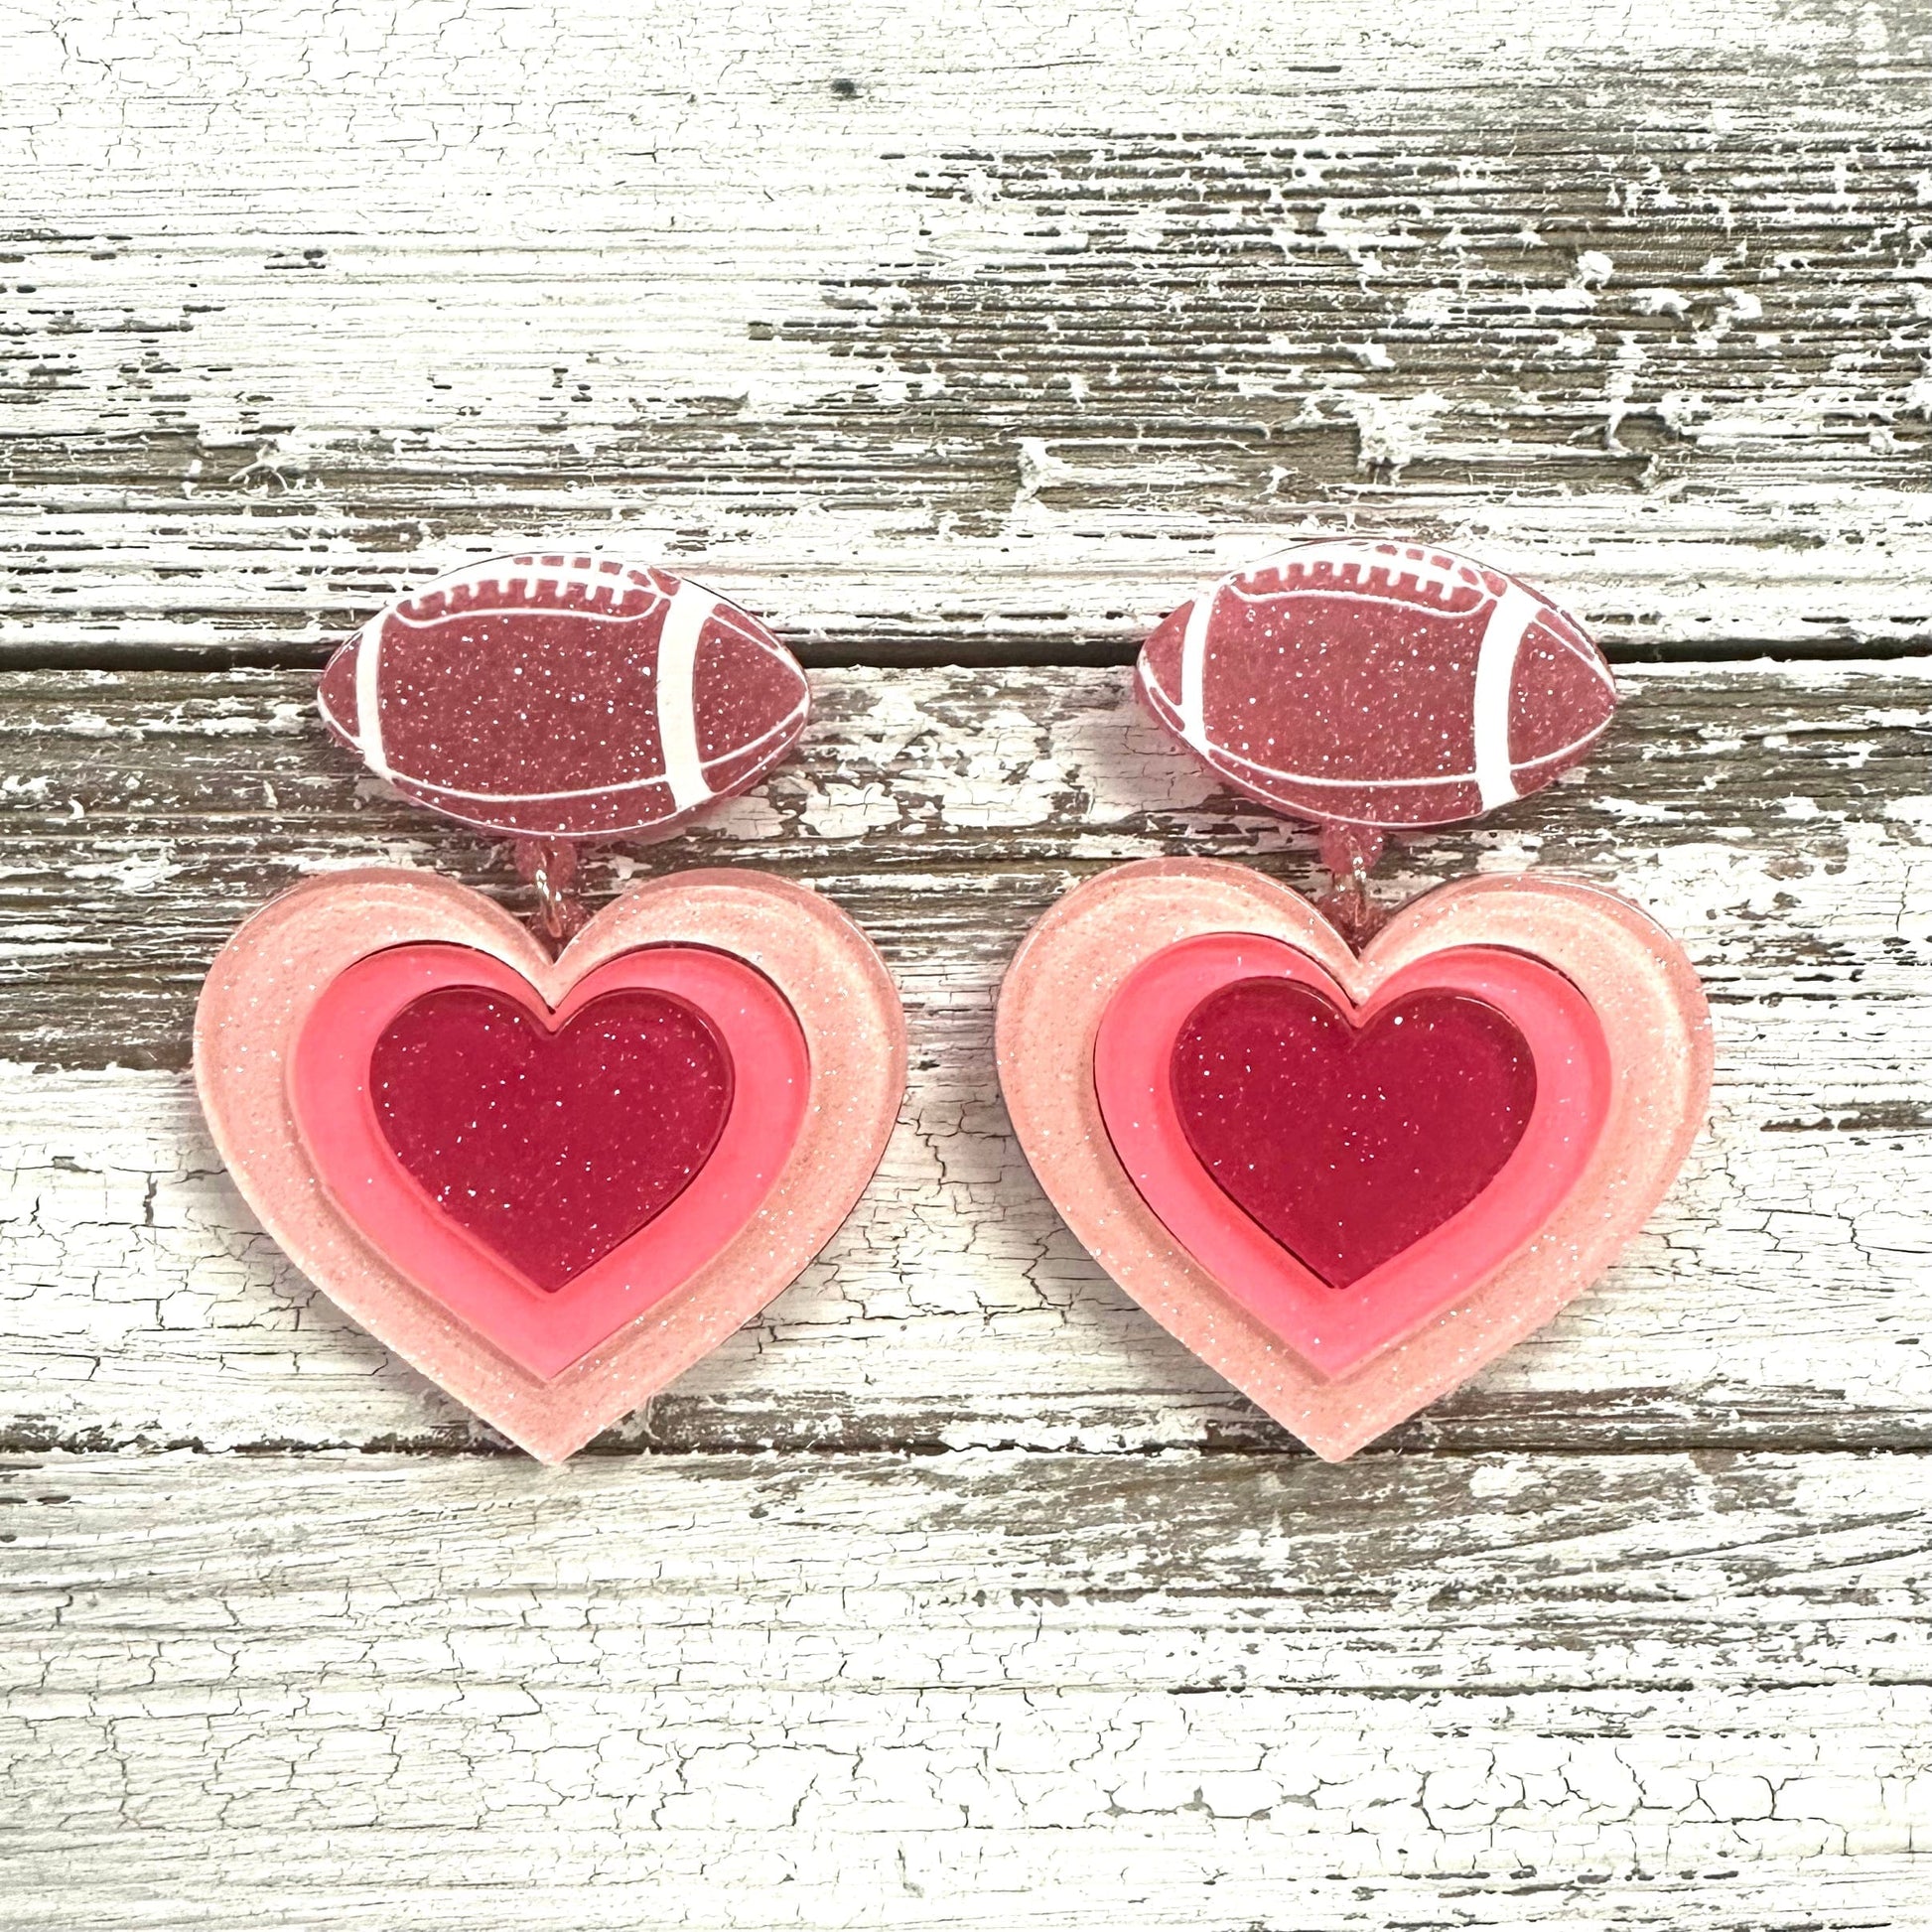 Envy Stylz Boutique Women - Accessories - Earrings Pink Football Heart Earrings